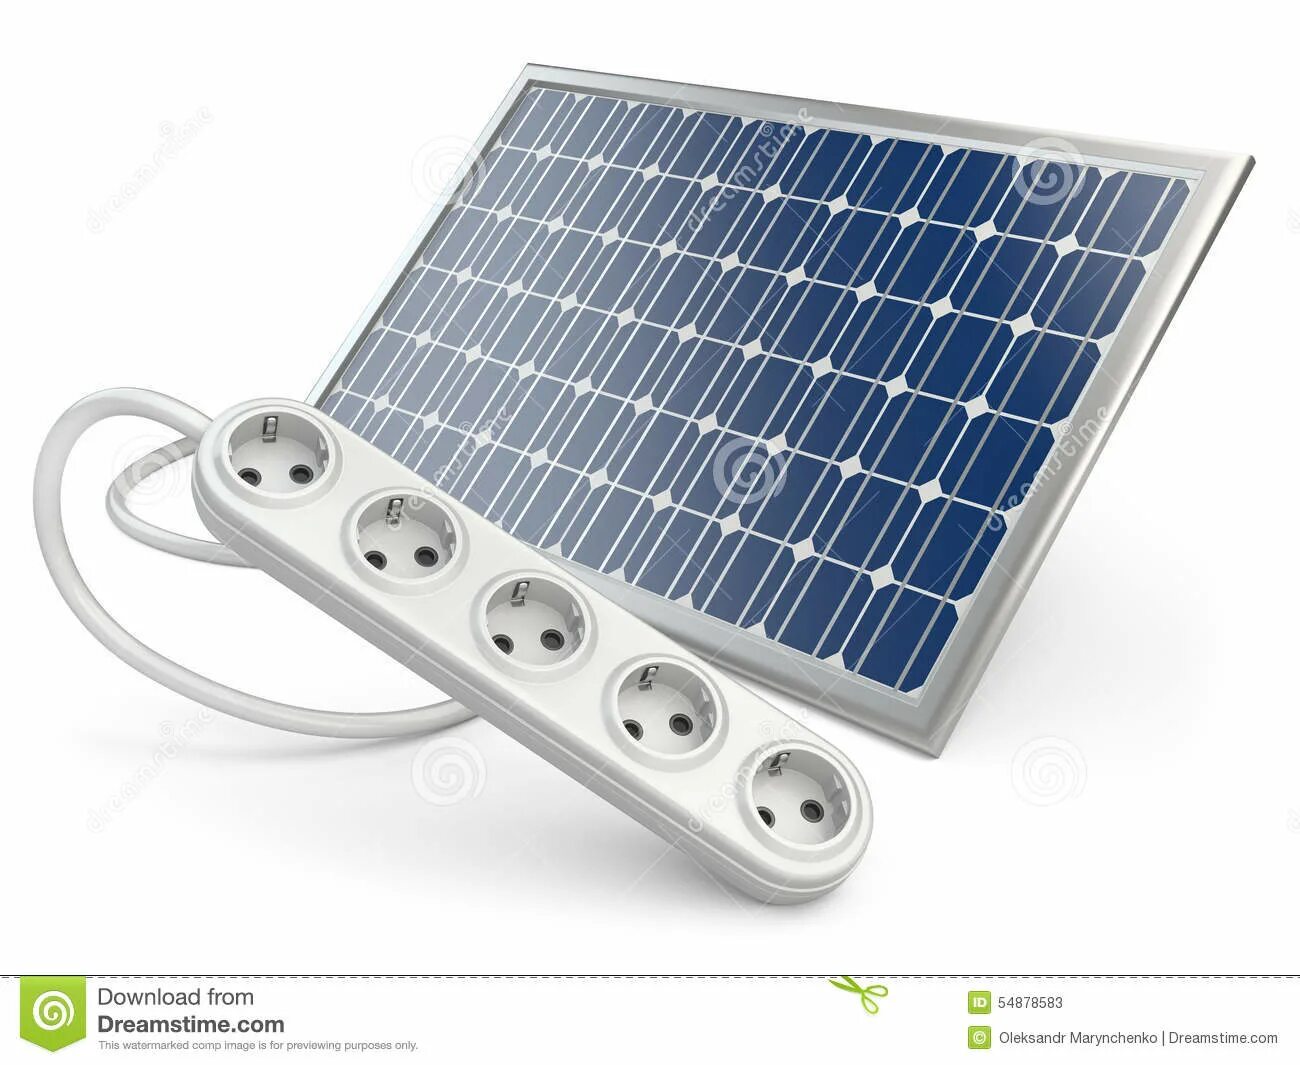 220 солнечные батареи купить. Солнечная панель 1000 Вт 220 вольт. Солнечная панель на 10 вольт. Солнечная батарея на 220влт. Солнечный панель на 220в.